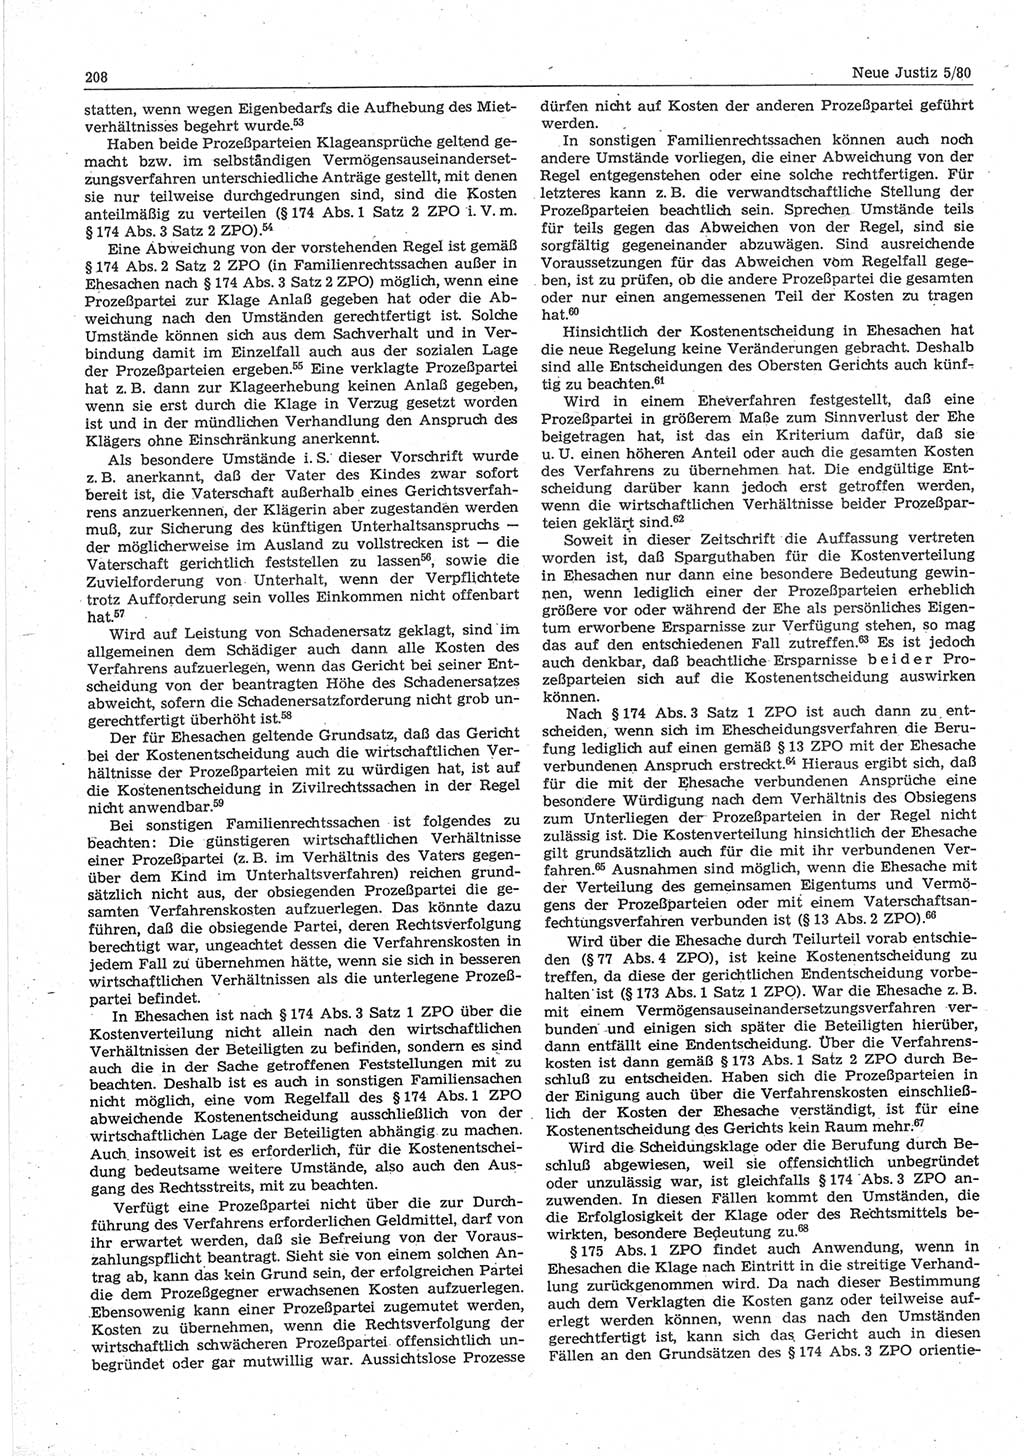 Neue Justiz (NJ), Zeitschrift für sozialistisches Recht und Gesetzlichkeit [Deutsche Demokratische Republik (DDR)], 34. Jahrgang 1980, Seite 208 (NJ DDR 1980, S. 208)